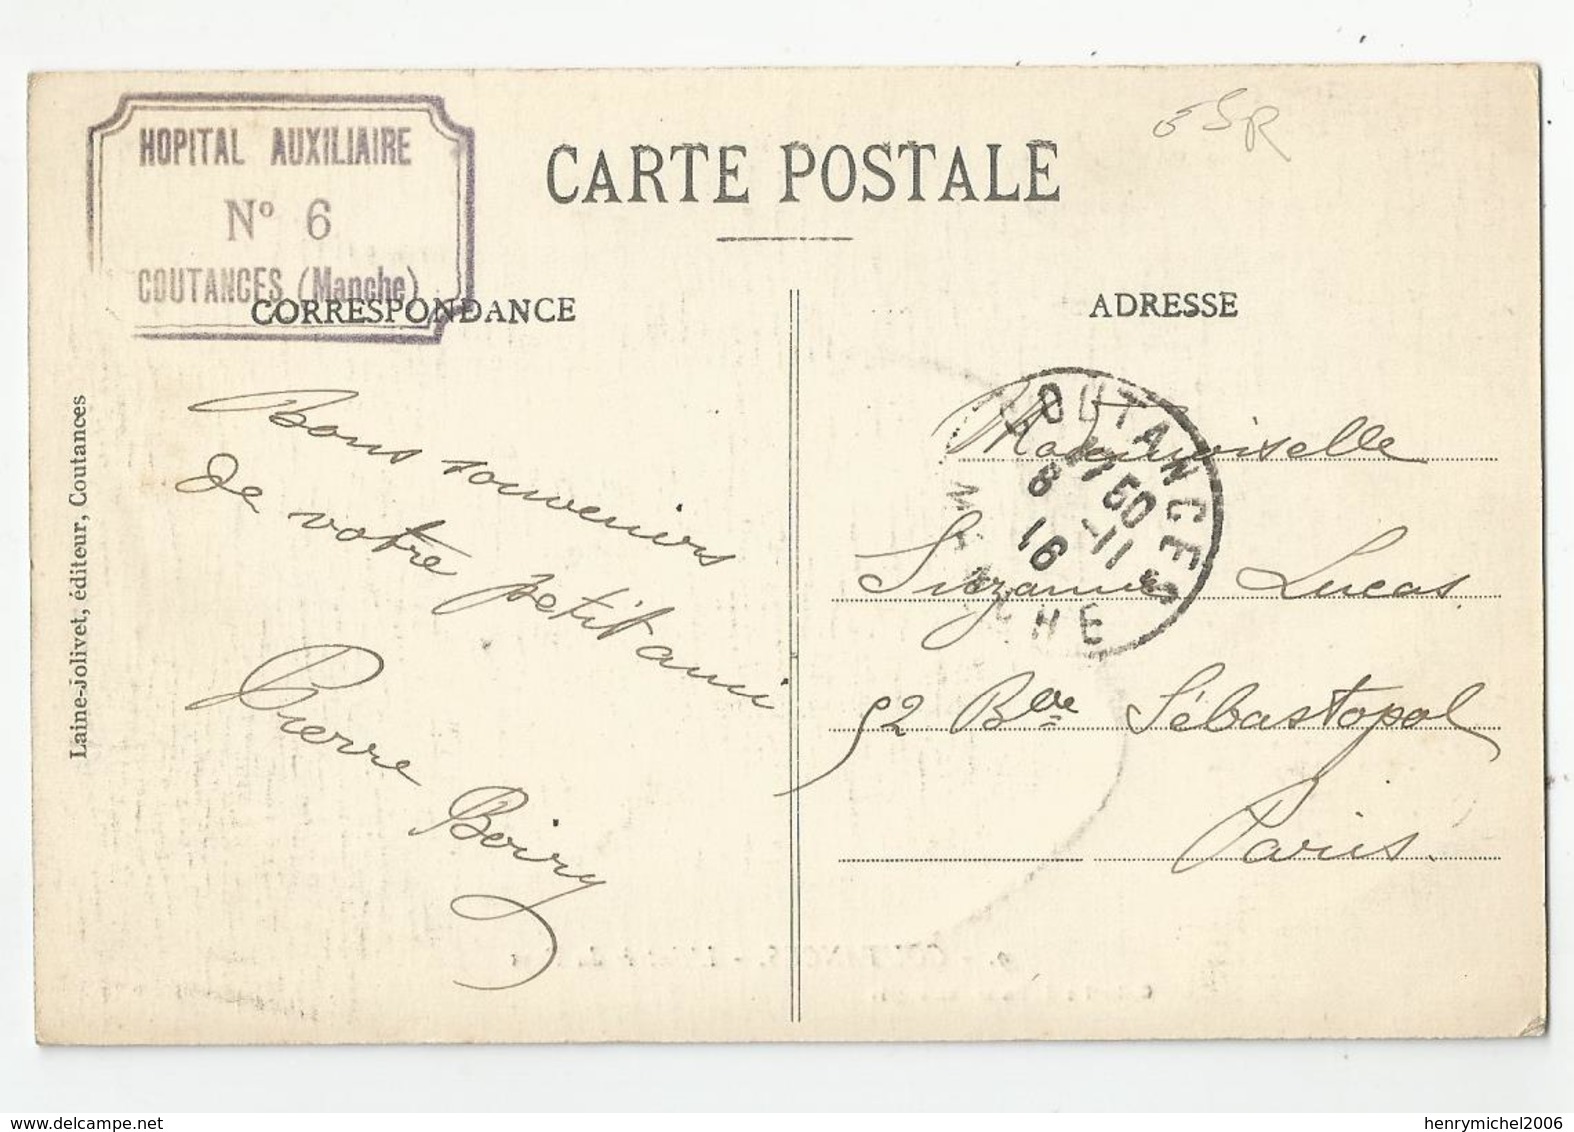 Marcophilie Cachet  Hopital Auxiliaire N6 Coutances 50 Manche - 1916 - WW I